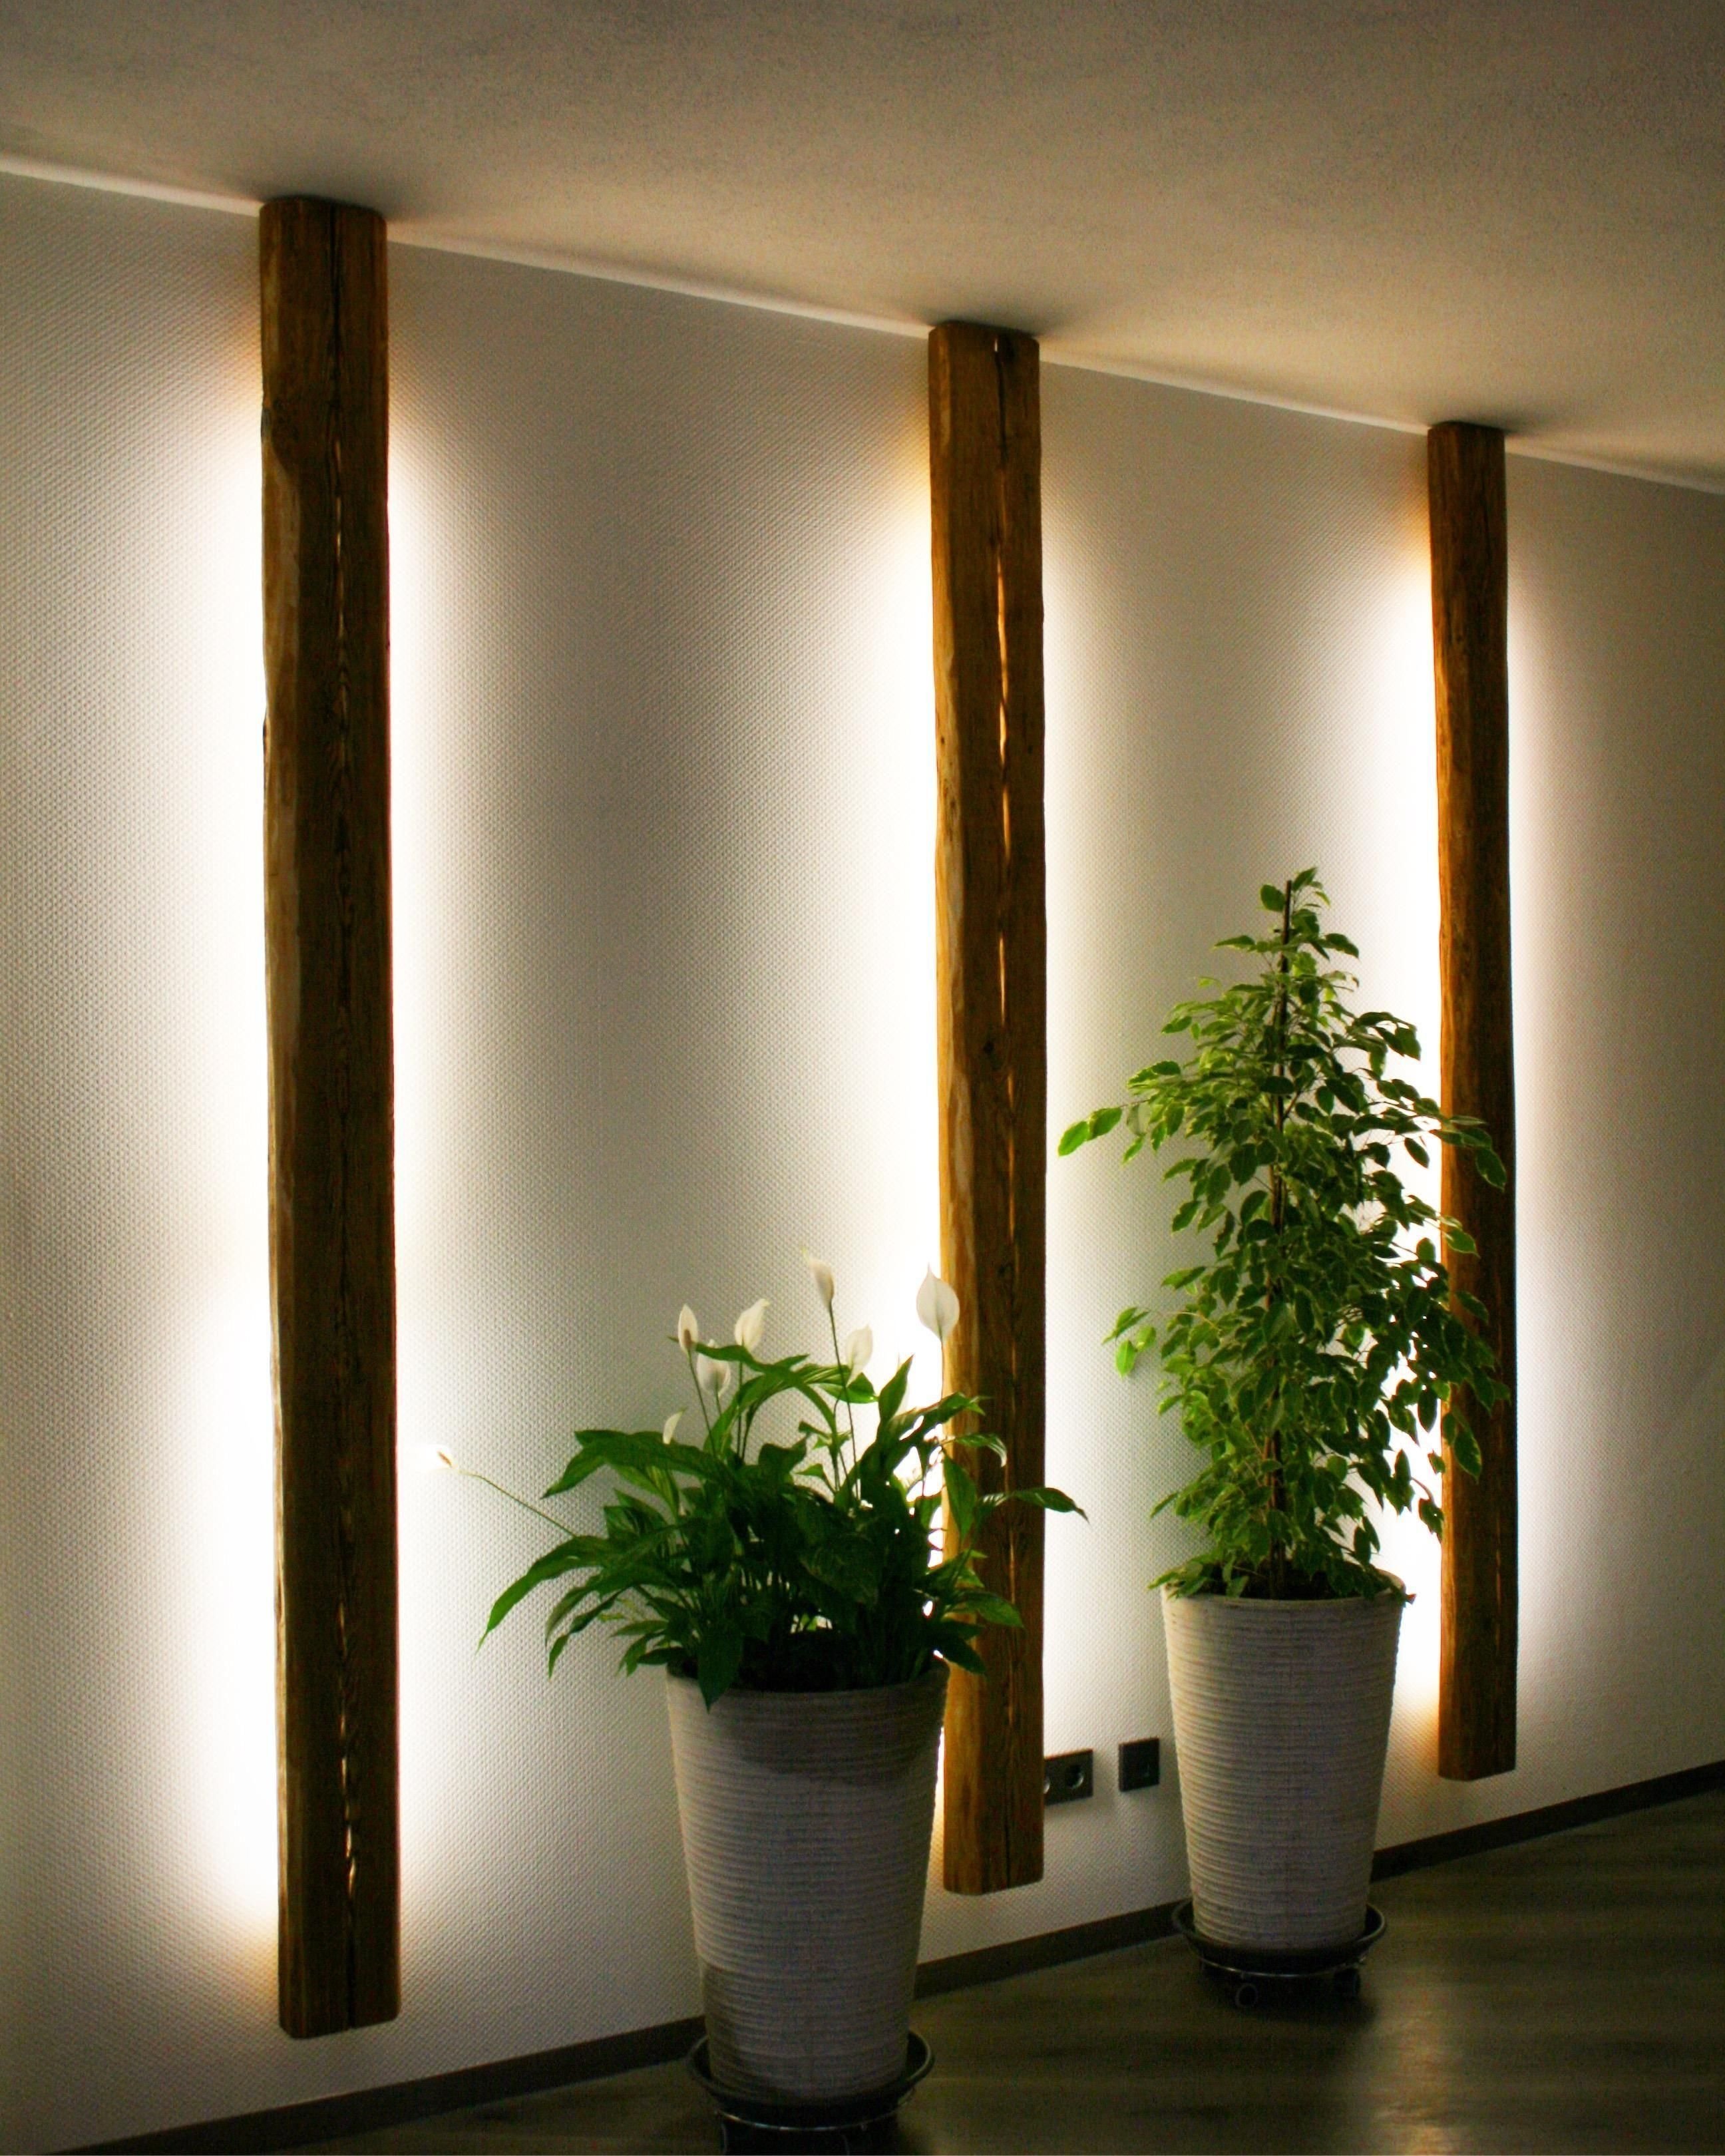 Вертикальная светодиодная лампа. Светильник на стену. Вертикальный светильник на стену. Интерьерные светильники на стену. Вертикальная подсветка стен.